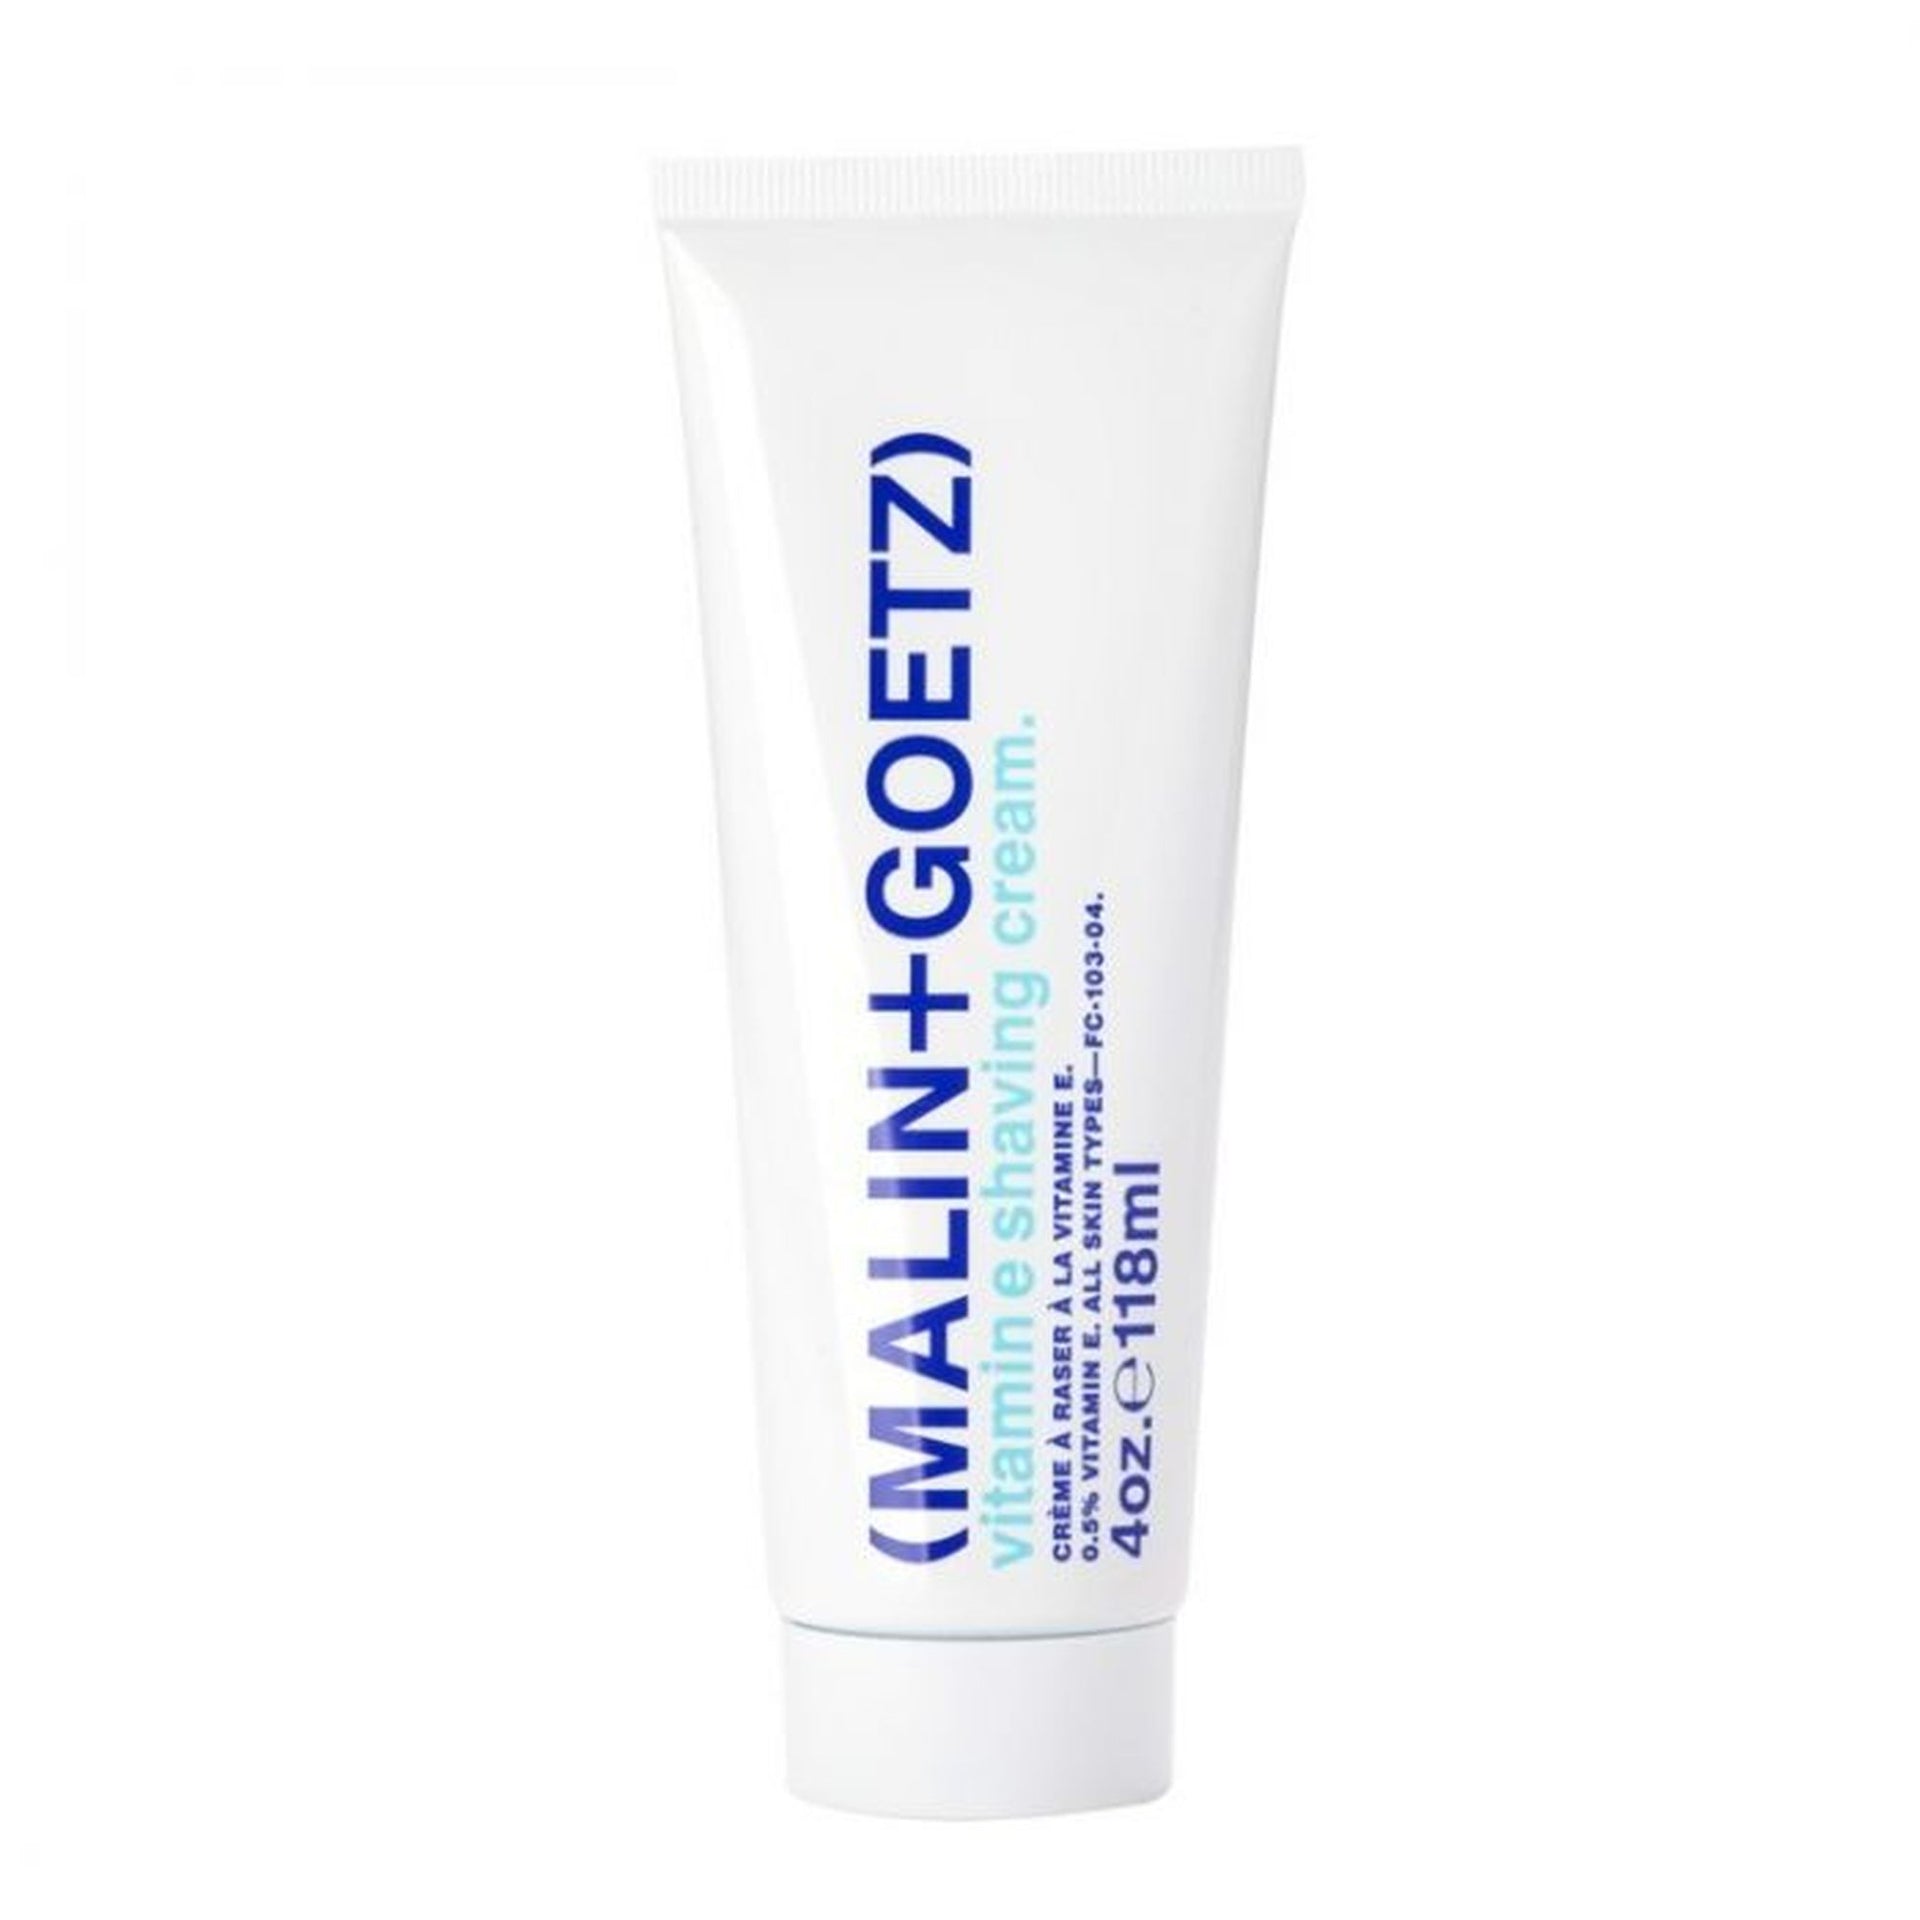 MalinGoetz Vitamin E Shaving Cream